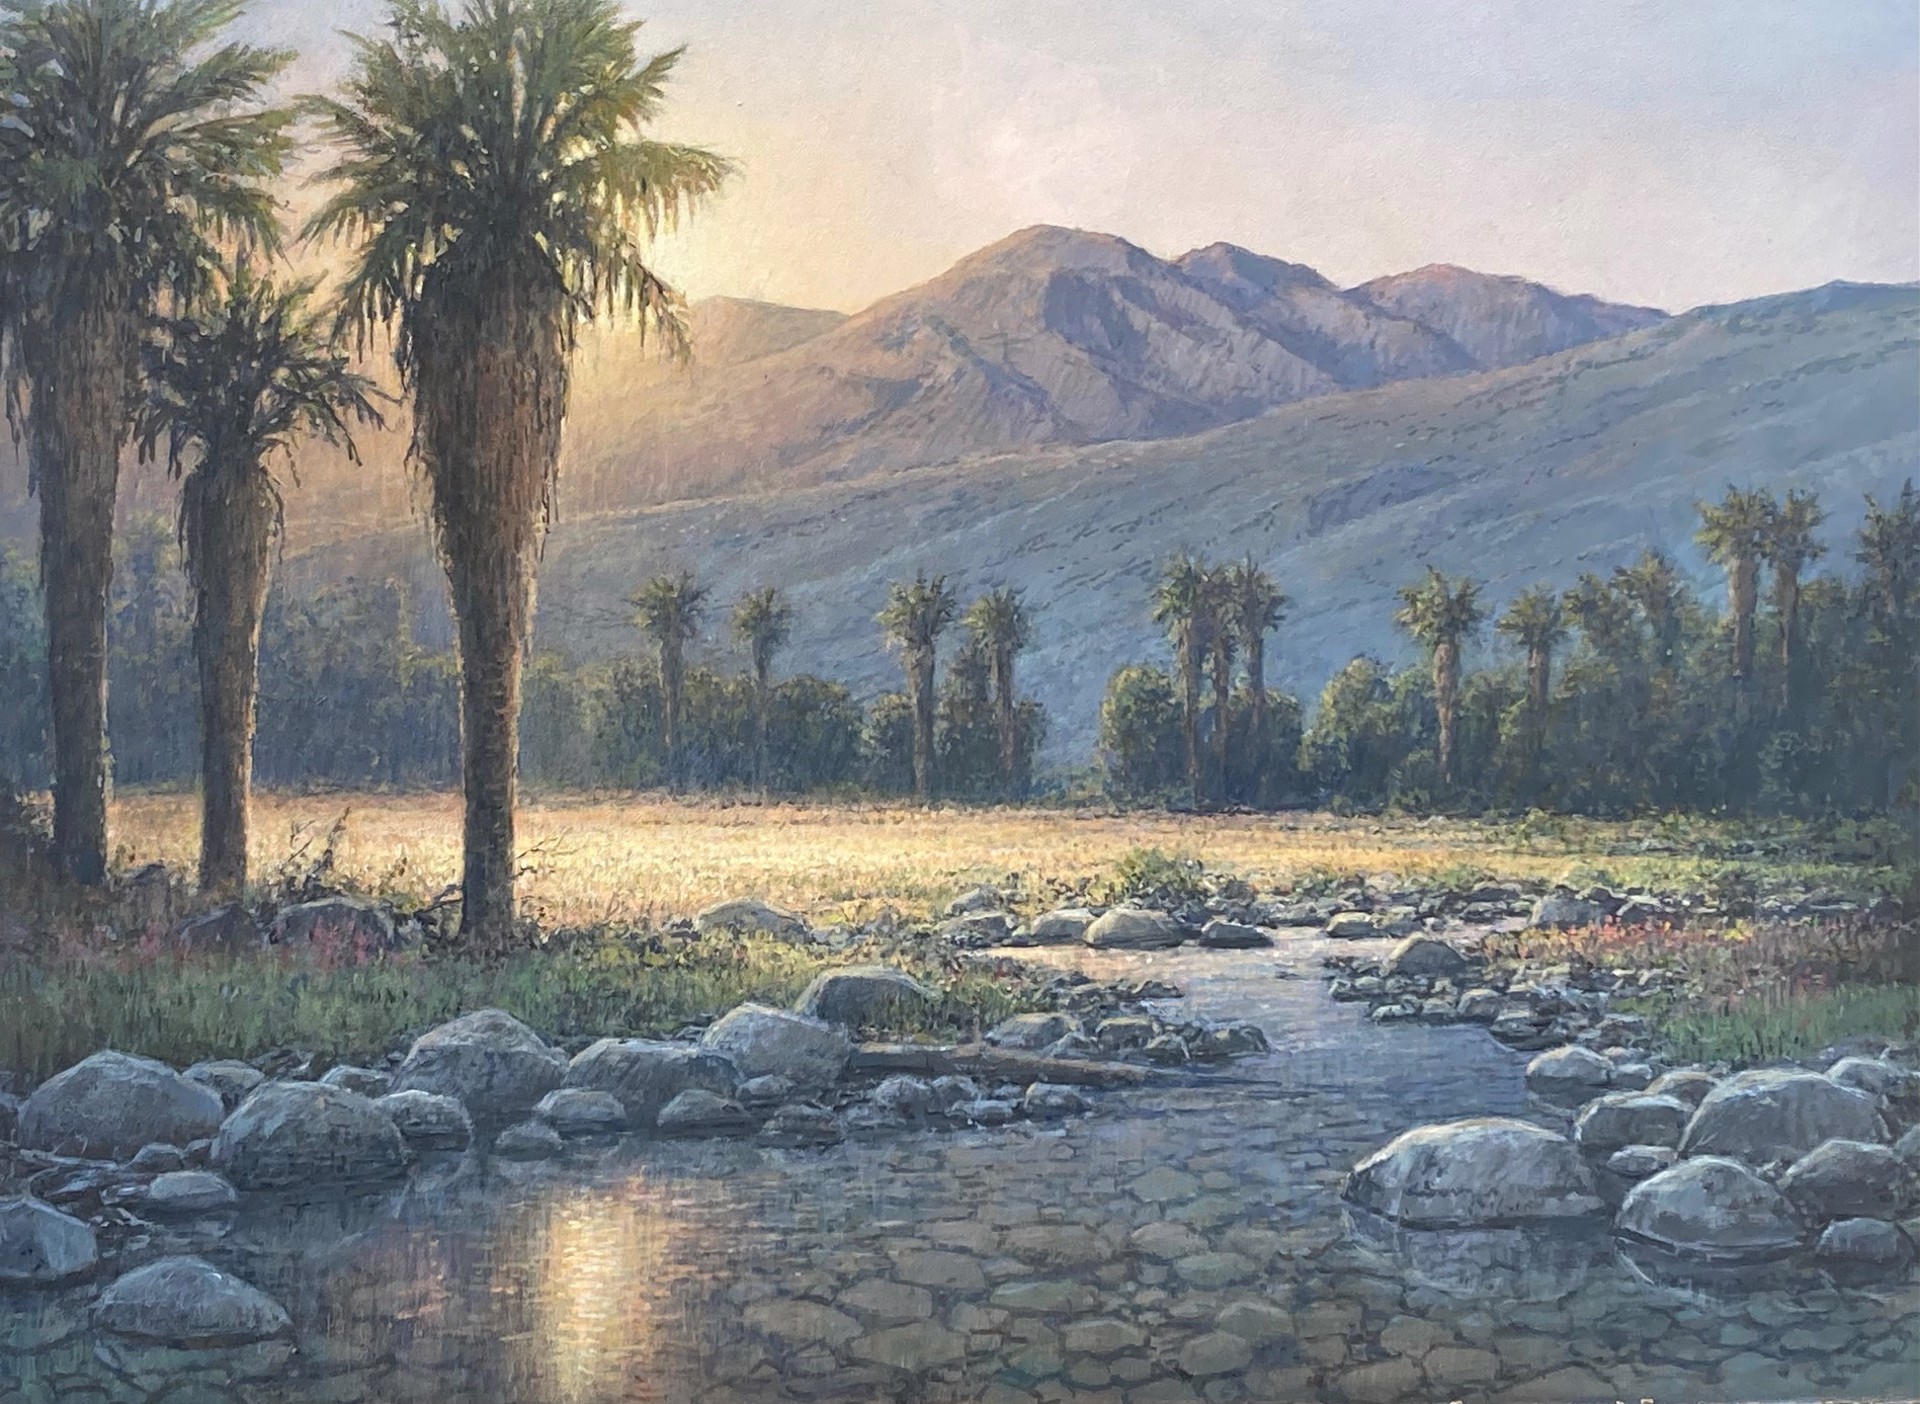 Desert Springs by John Paul Braman